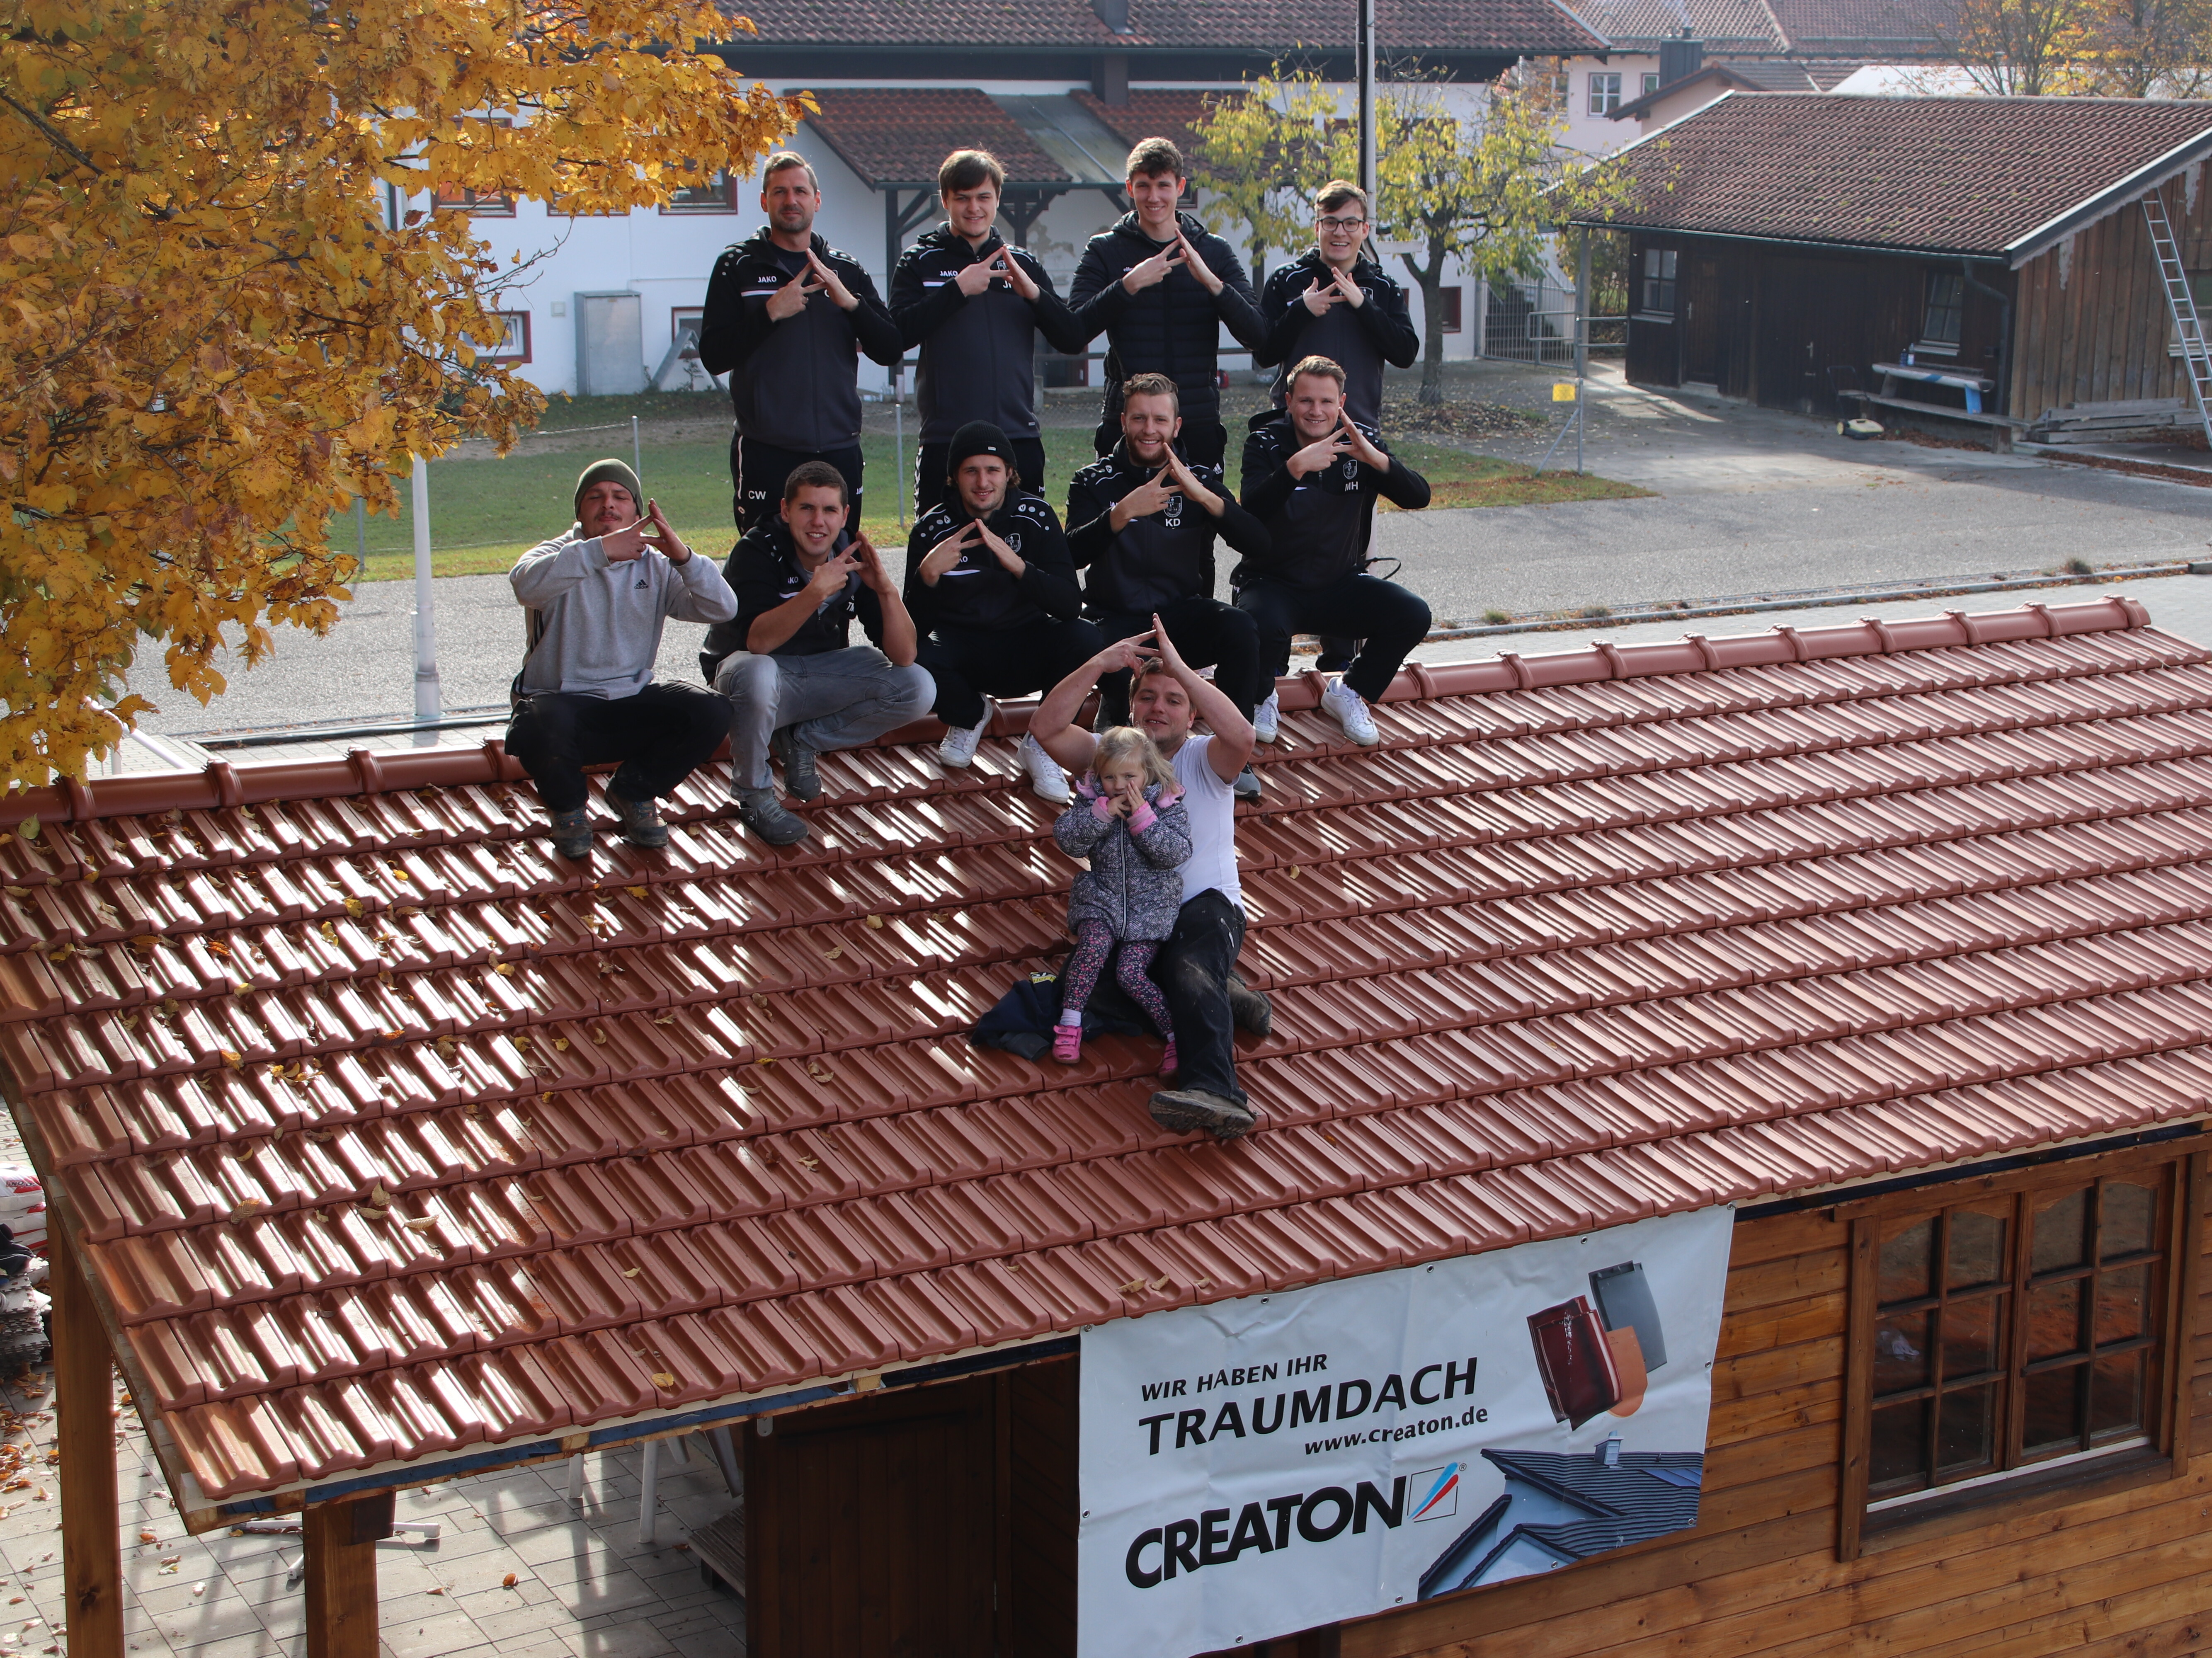 Ein Teil der Fußballmannschaft des TSV Obertaufkirchen und von Holzbau Tröstl zeigen die Dachgeste auf der neu eingedeckten Verkaufshütte des Fußballvereins. Mit diesem Bild gewannen der TSV sowie das Unternehmen die 1000 € Spendensumme im letzten Quartal 2021.